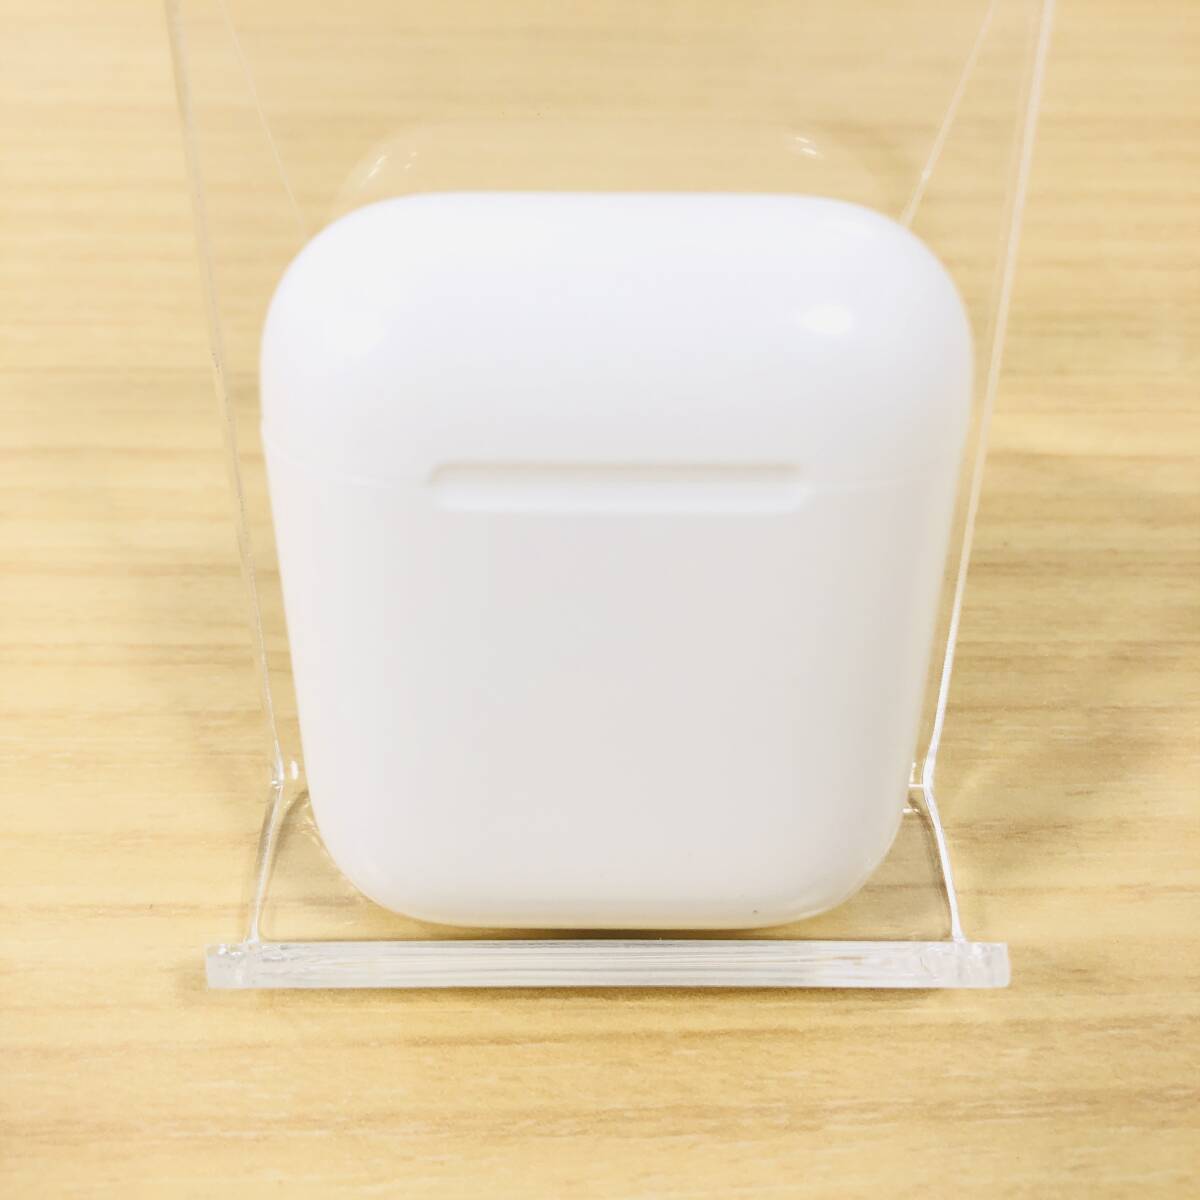 [24-04-230] Apple AirPods 第一世代 A1602 ワイヤレスイヤホン イヤホン イヤフォン エアポッズの画像2